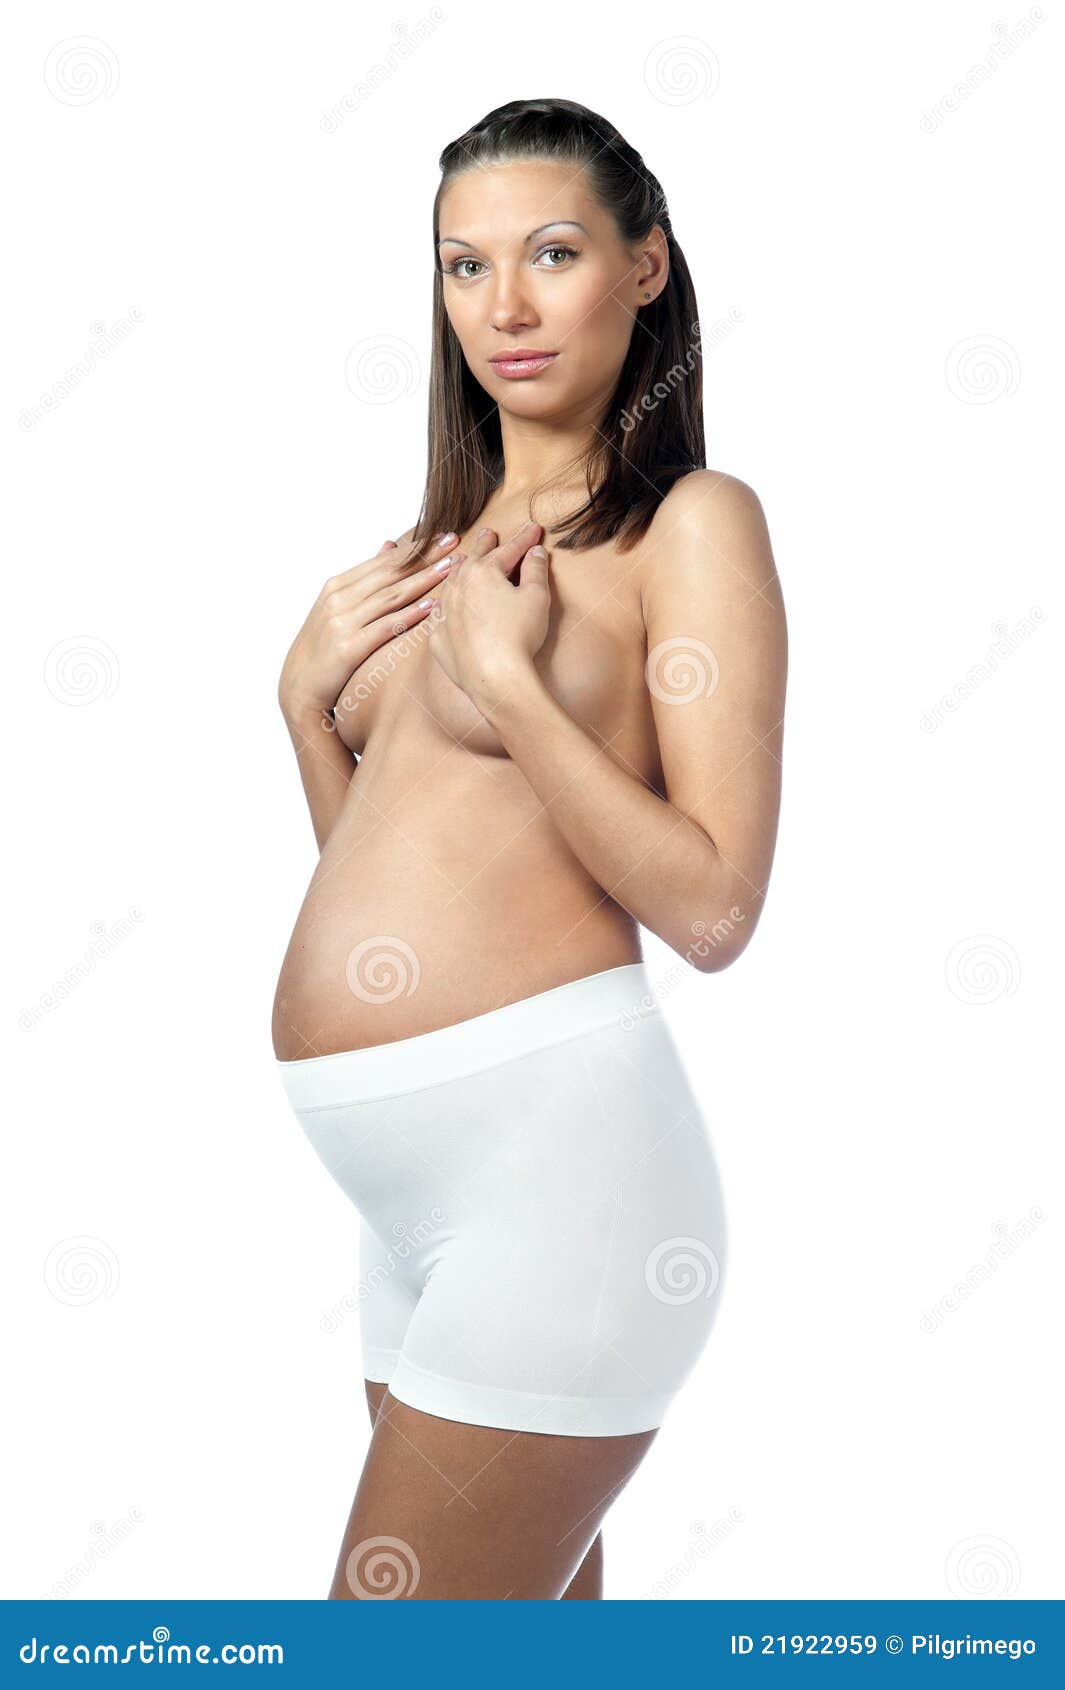 беременна но грудь не чувствительная фото 95